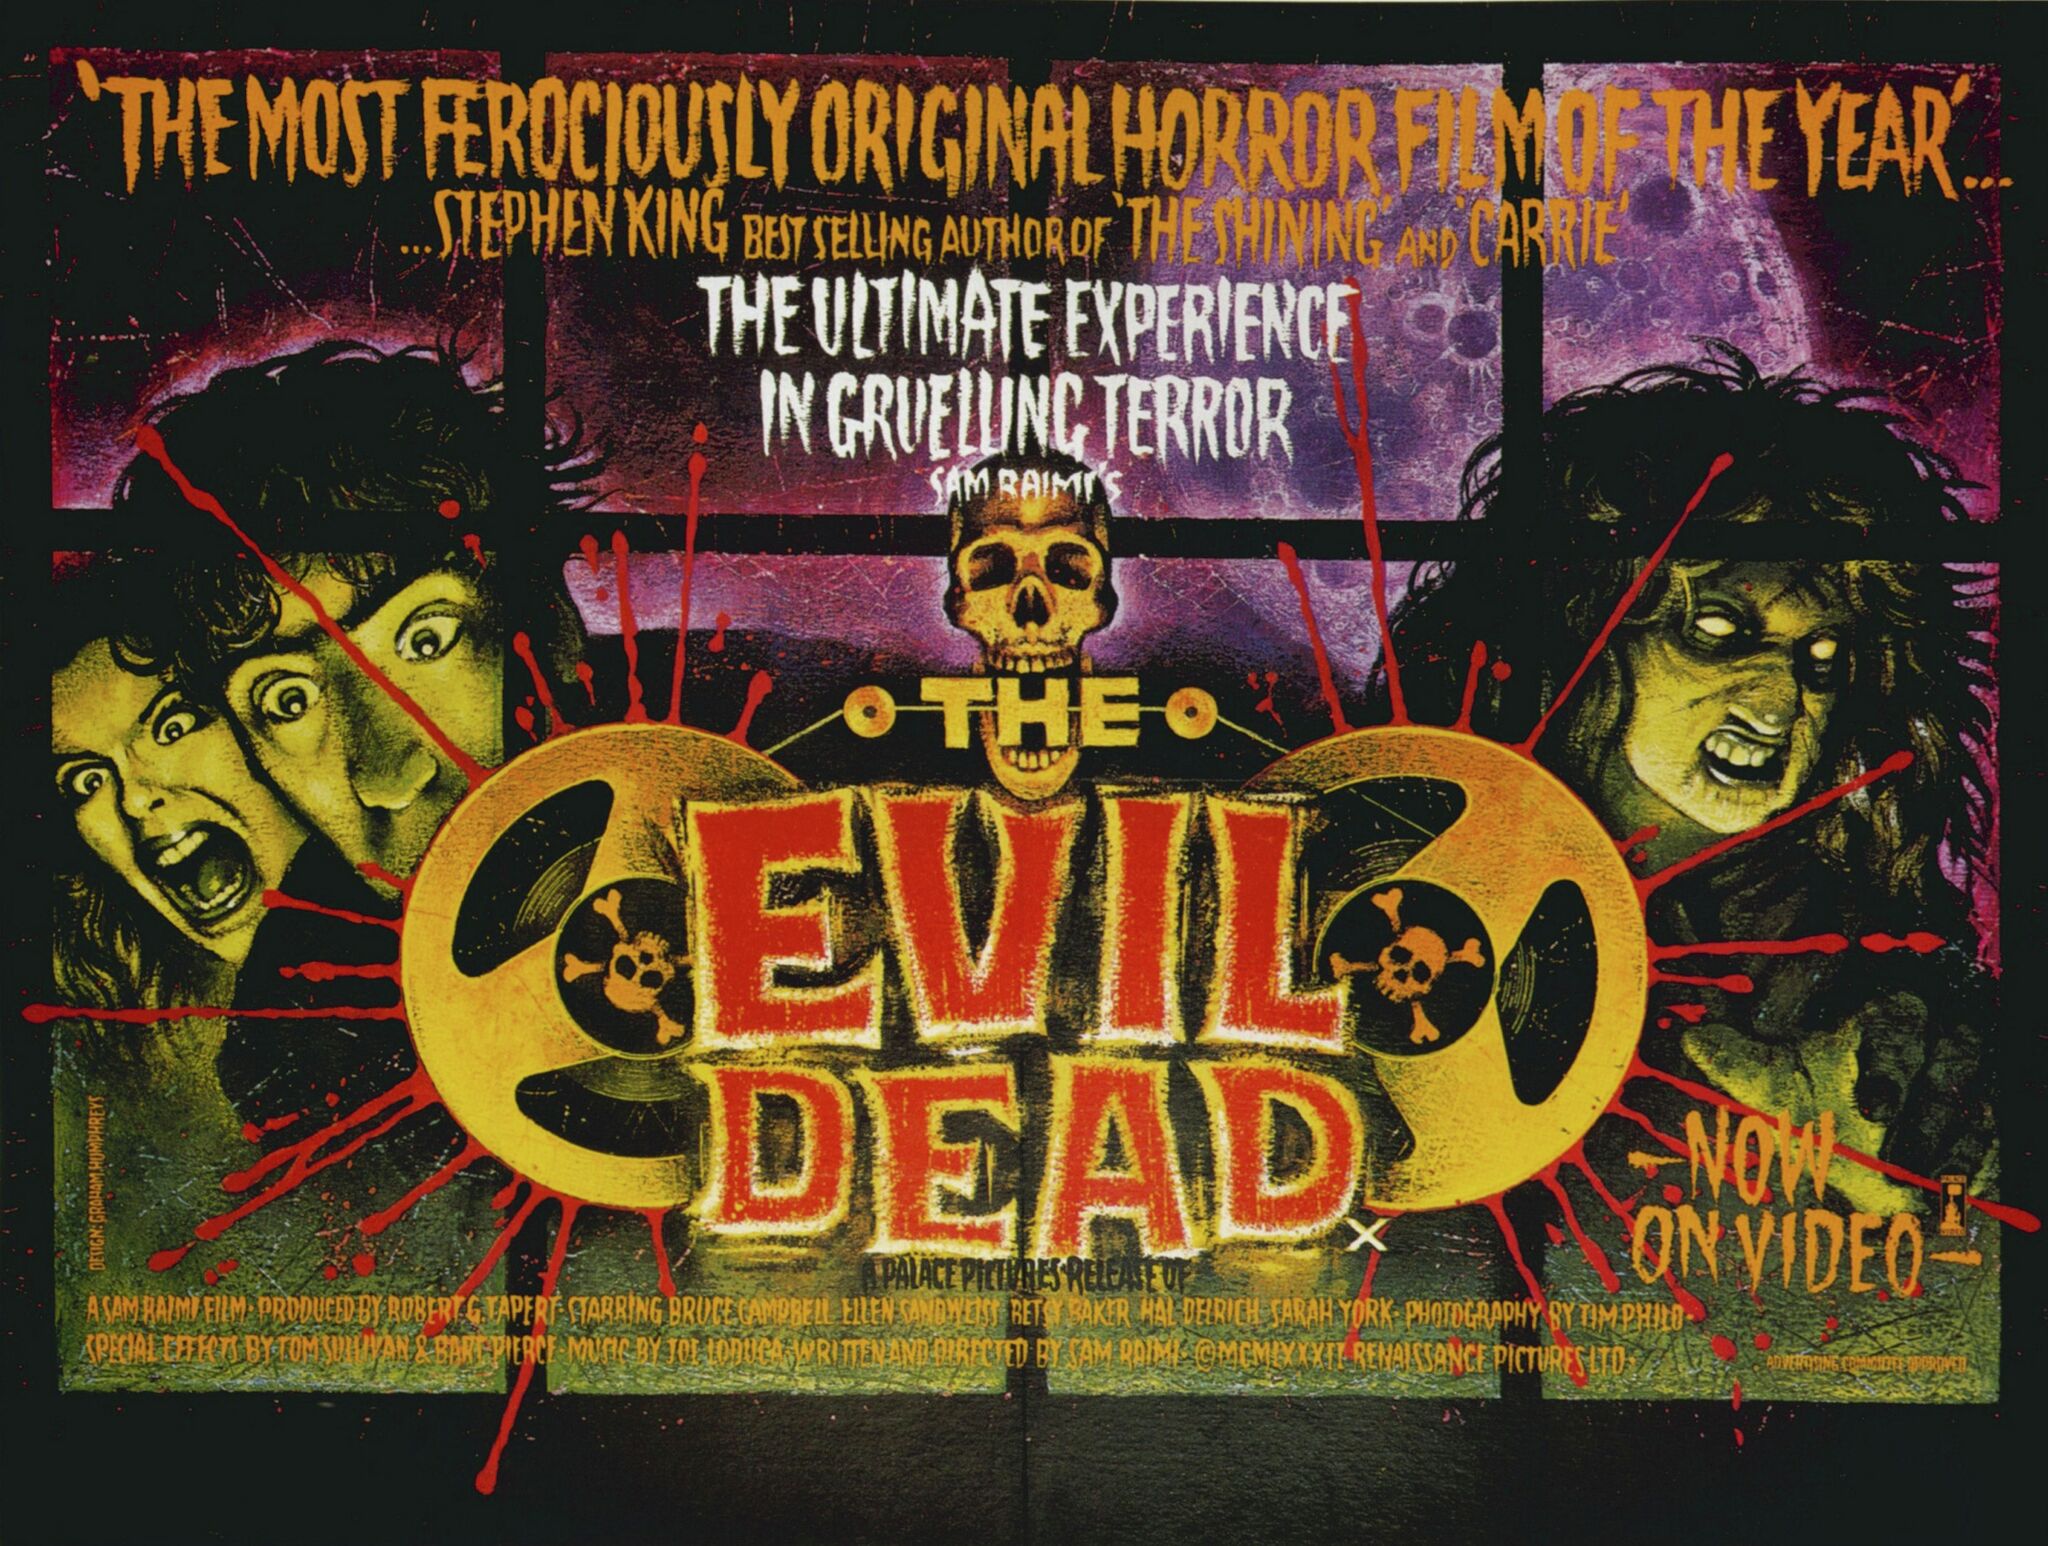 Evil Dead II  Music Box Theatre